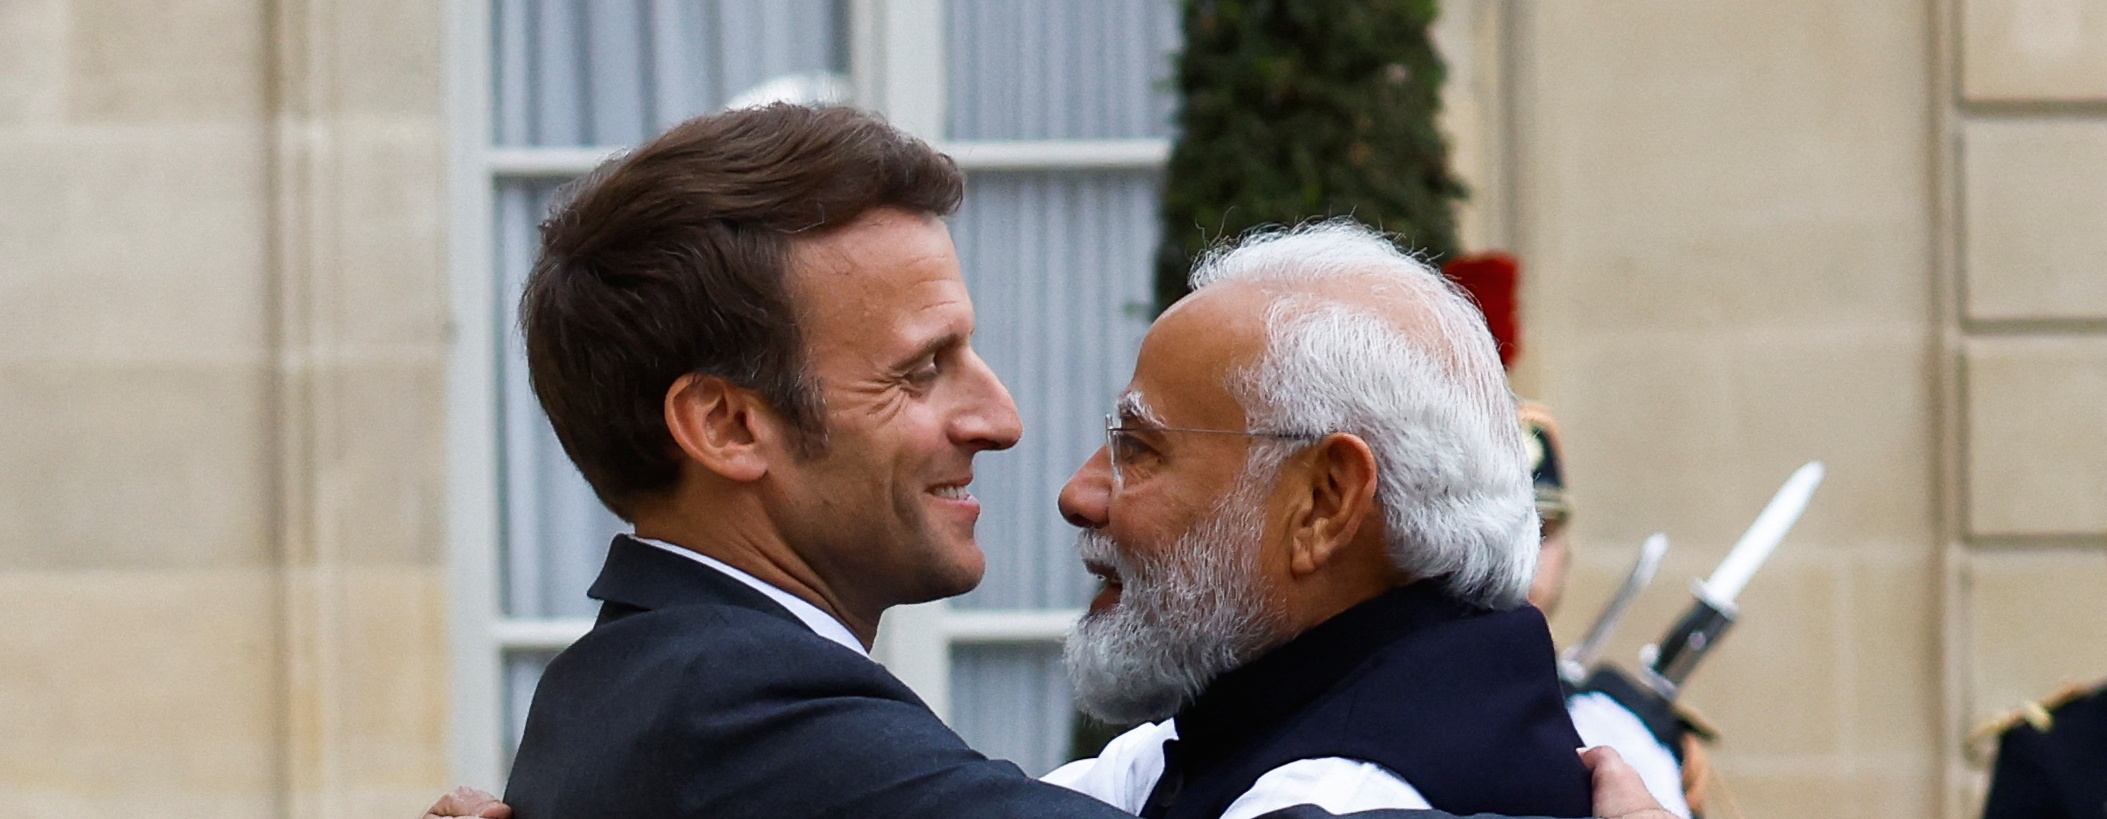 Le président français Emmanuel Macron accueille le Premier ministre indien Narendra Modi dans la cour du palais de l'Élysée à Paris, le 4 mai 2022. (Source : The Tribune)